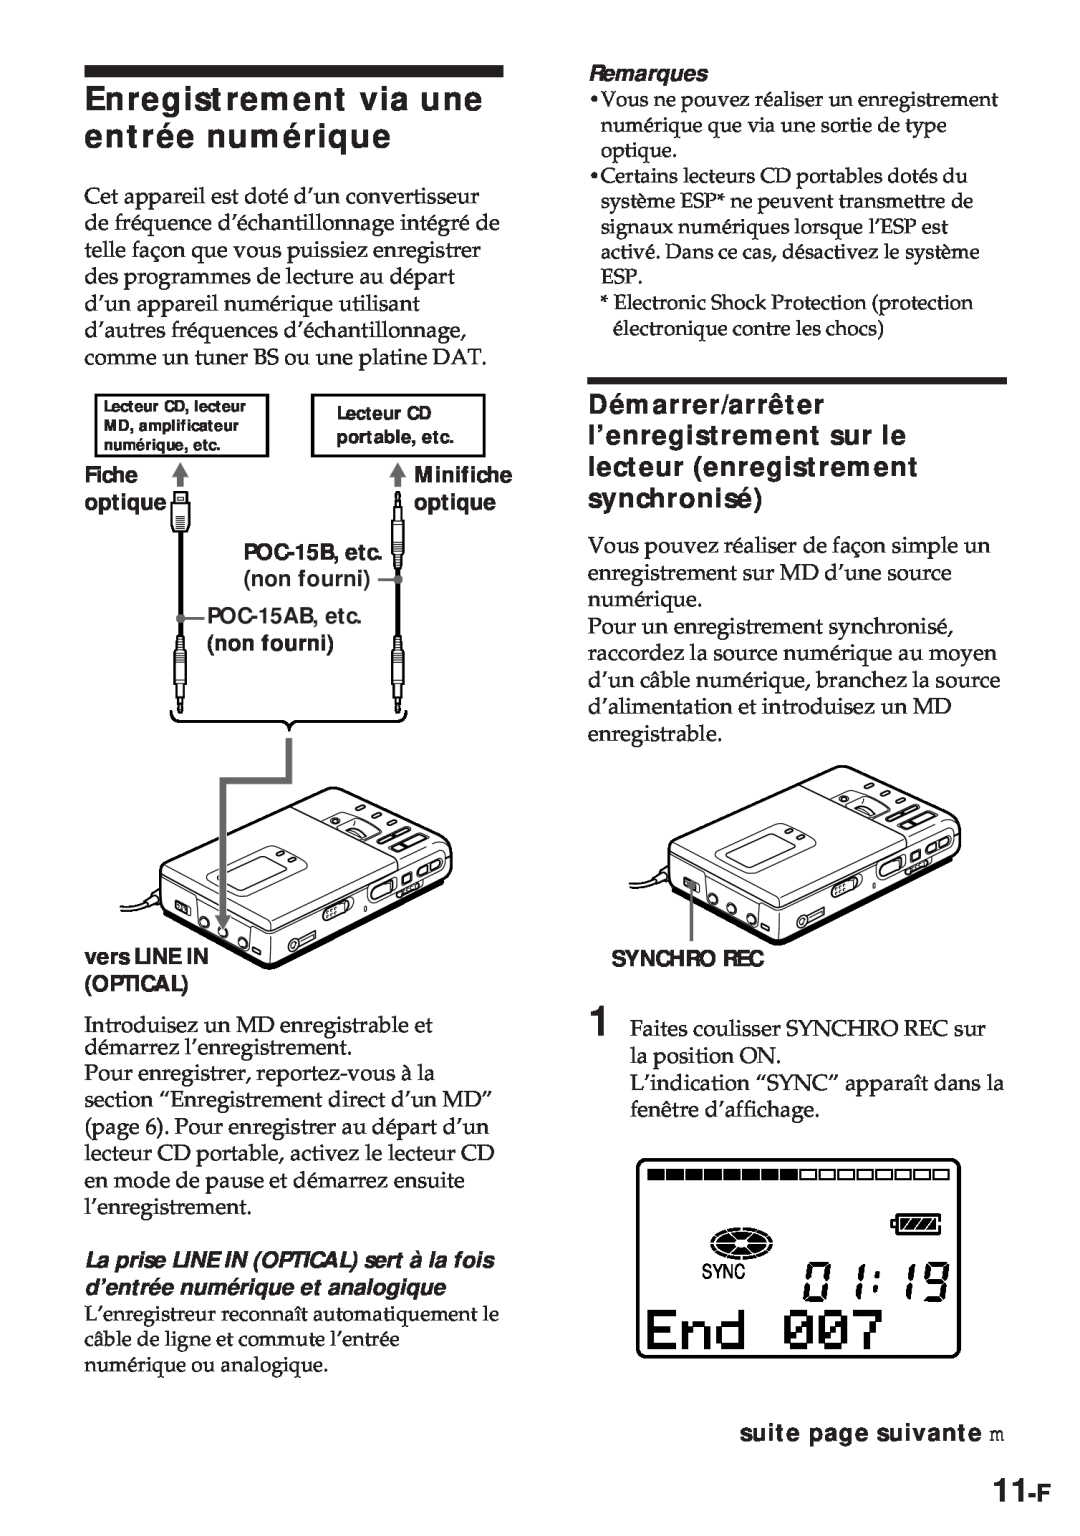 Sony MZ-R30 Enregistrement via une entrée numérique, 11-F, suite page suivante m, Fiche, optique, Remarques, Synchro Rec 